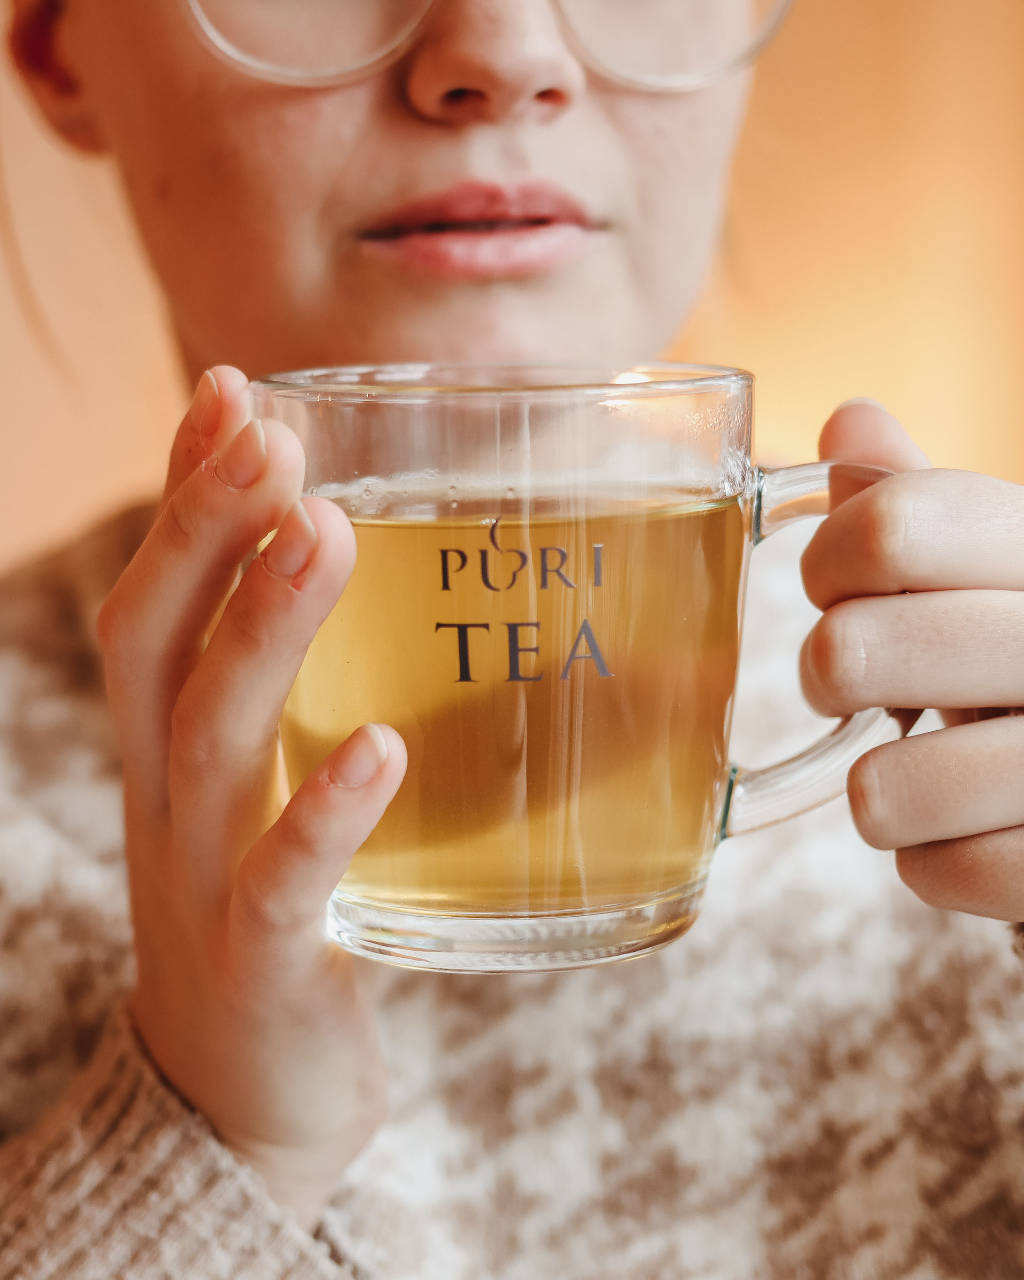 De gezondheidseffecten van thee (én de nadelen)